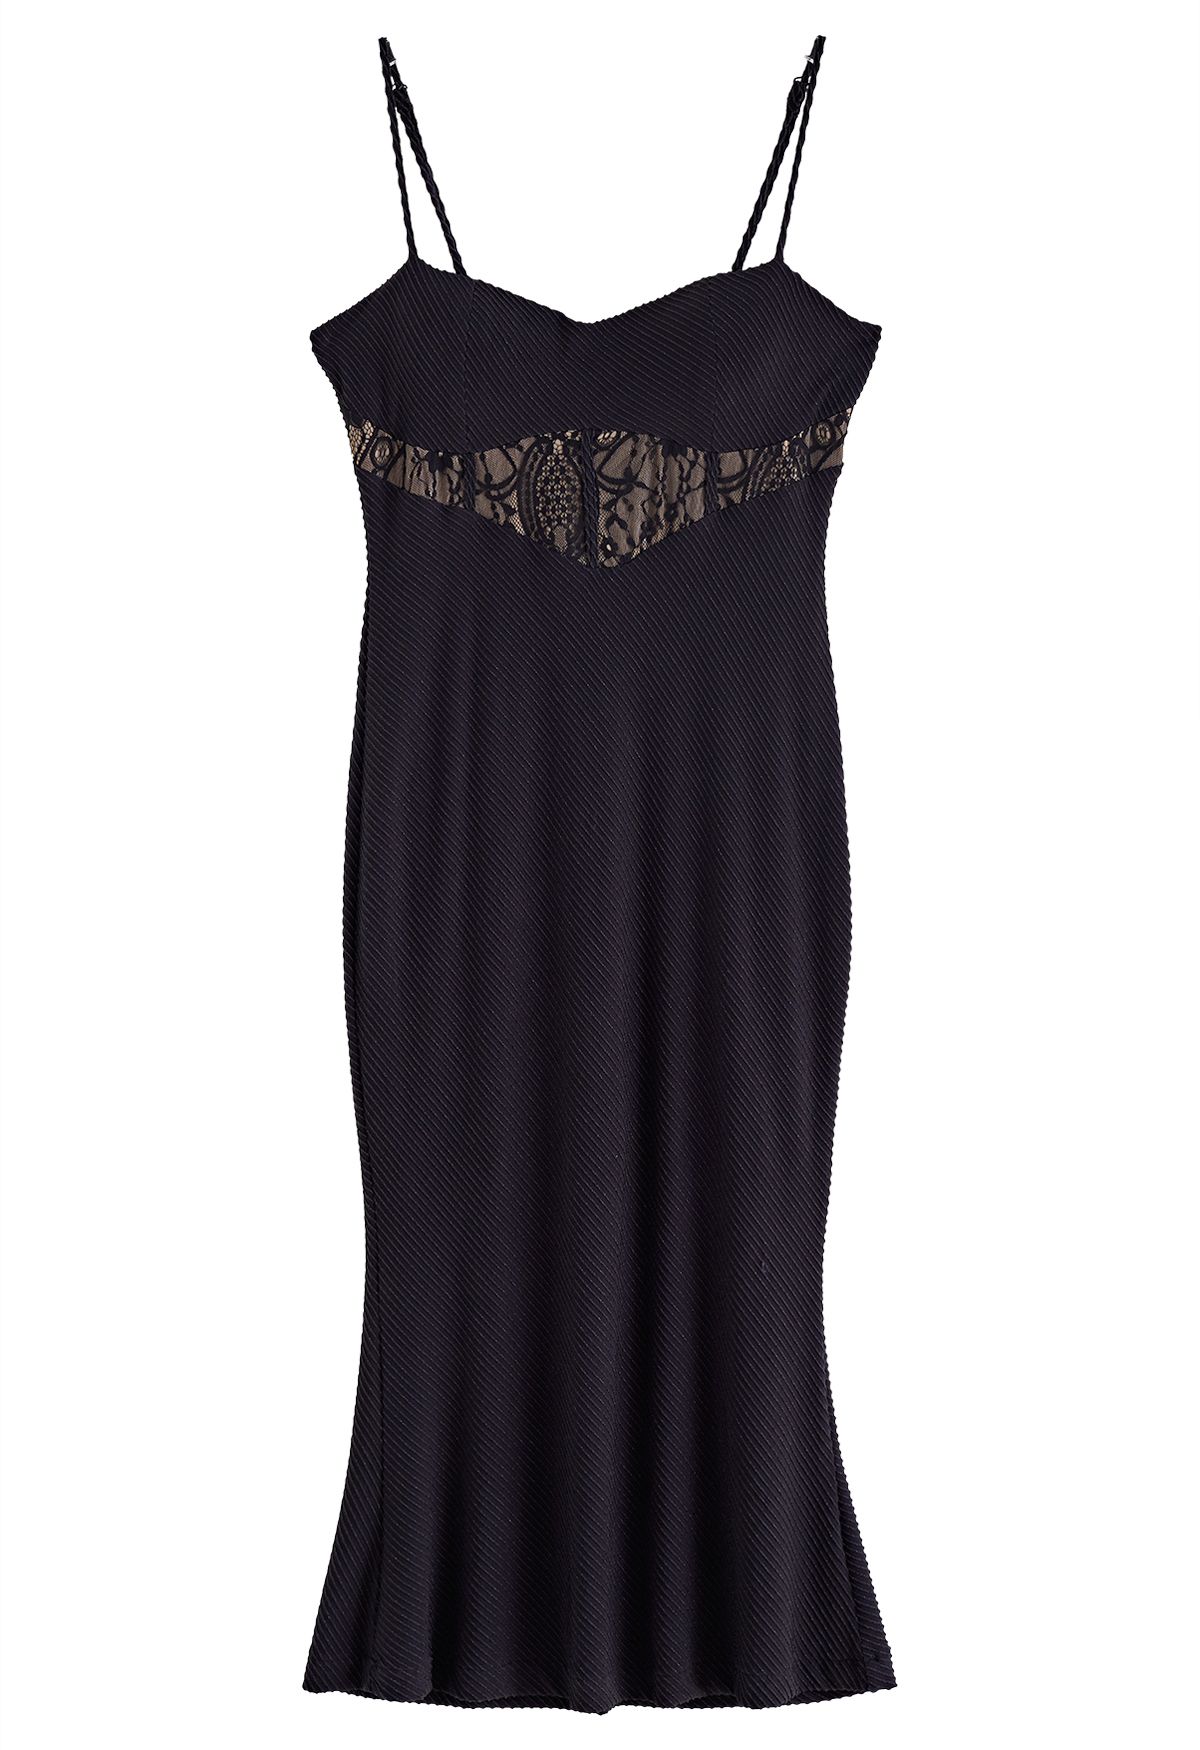 Meerjungfrau-Cami-Kleid mit geprägter Textur und Spitze